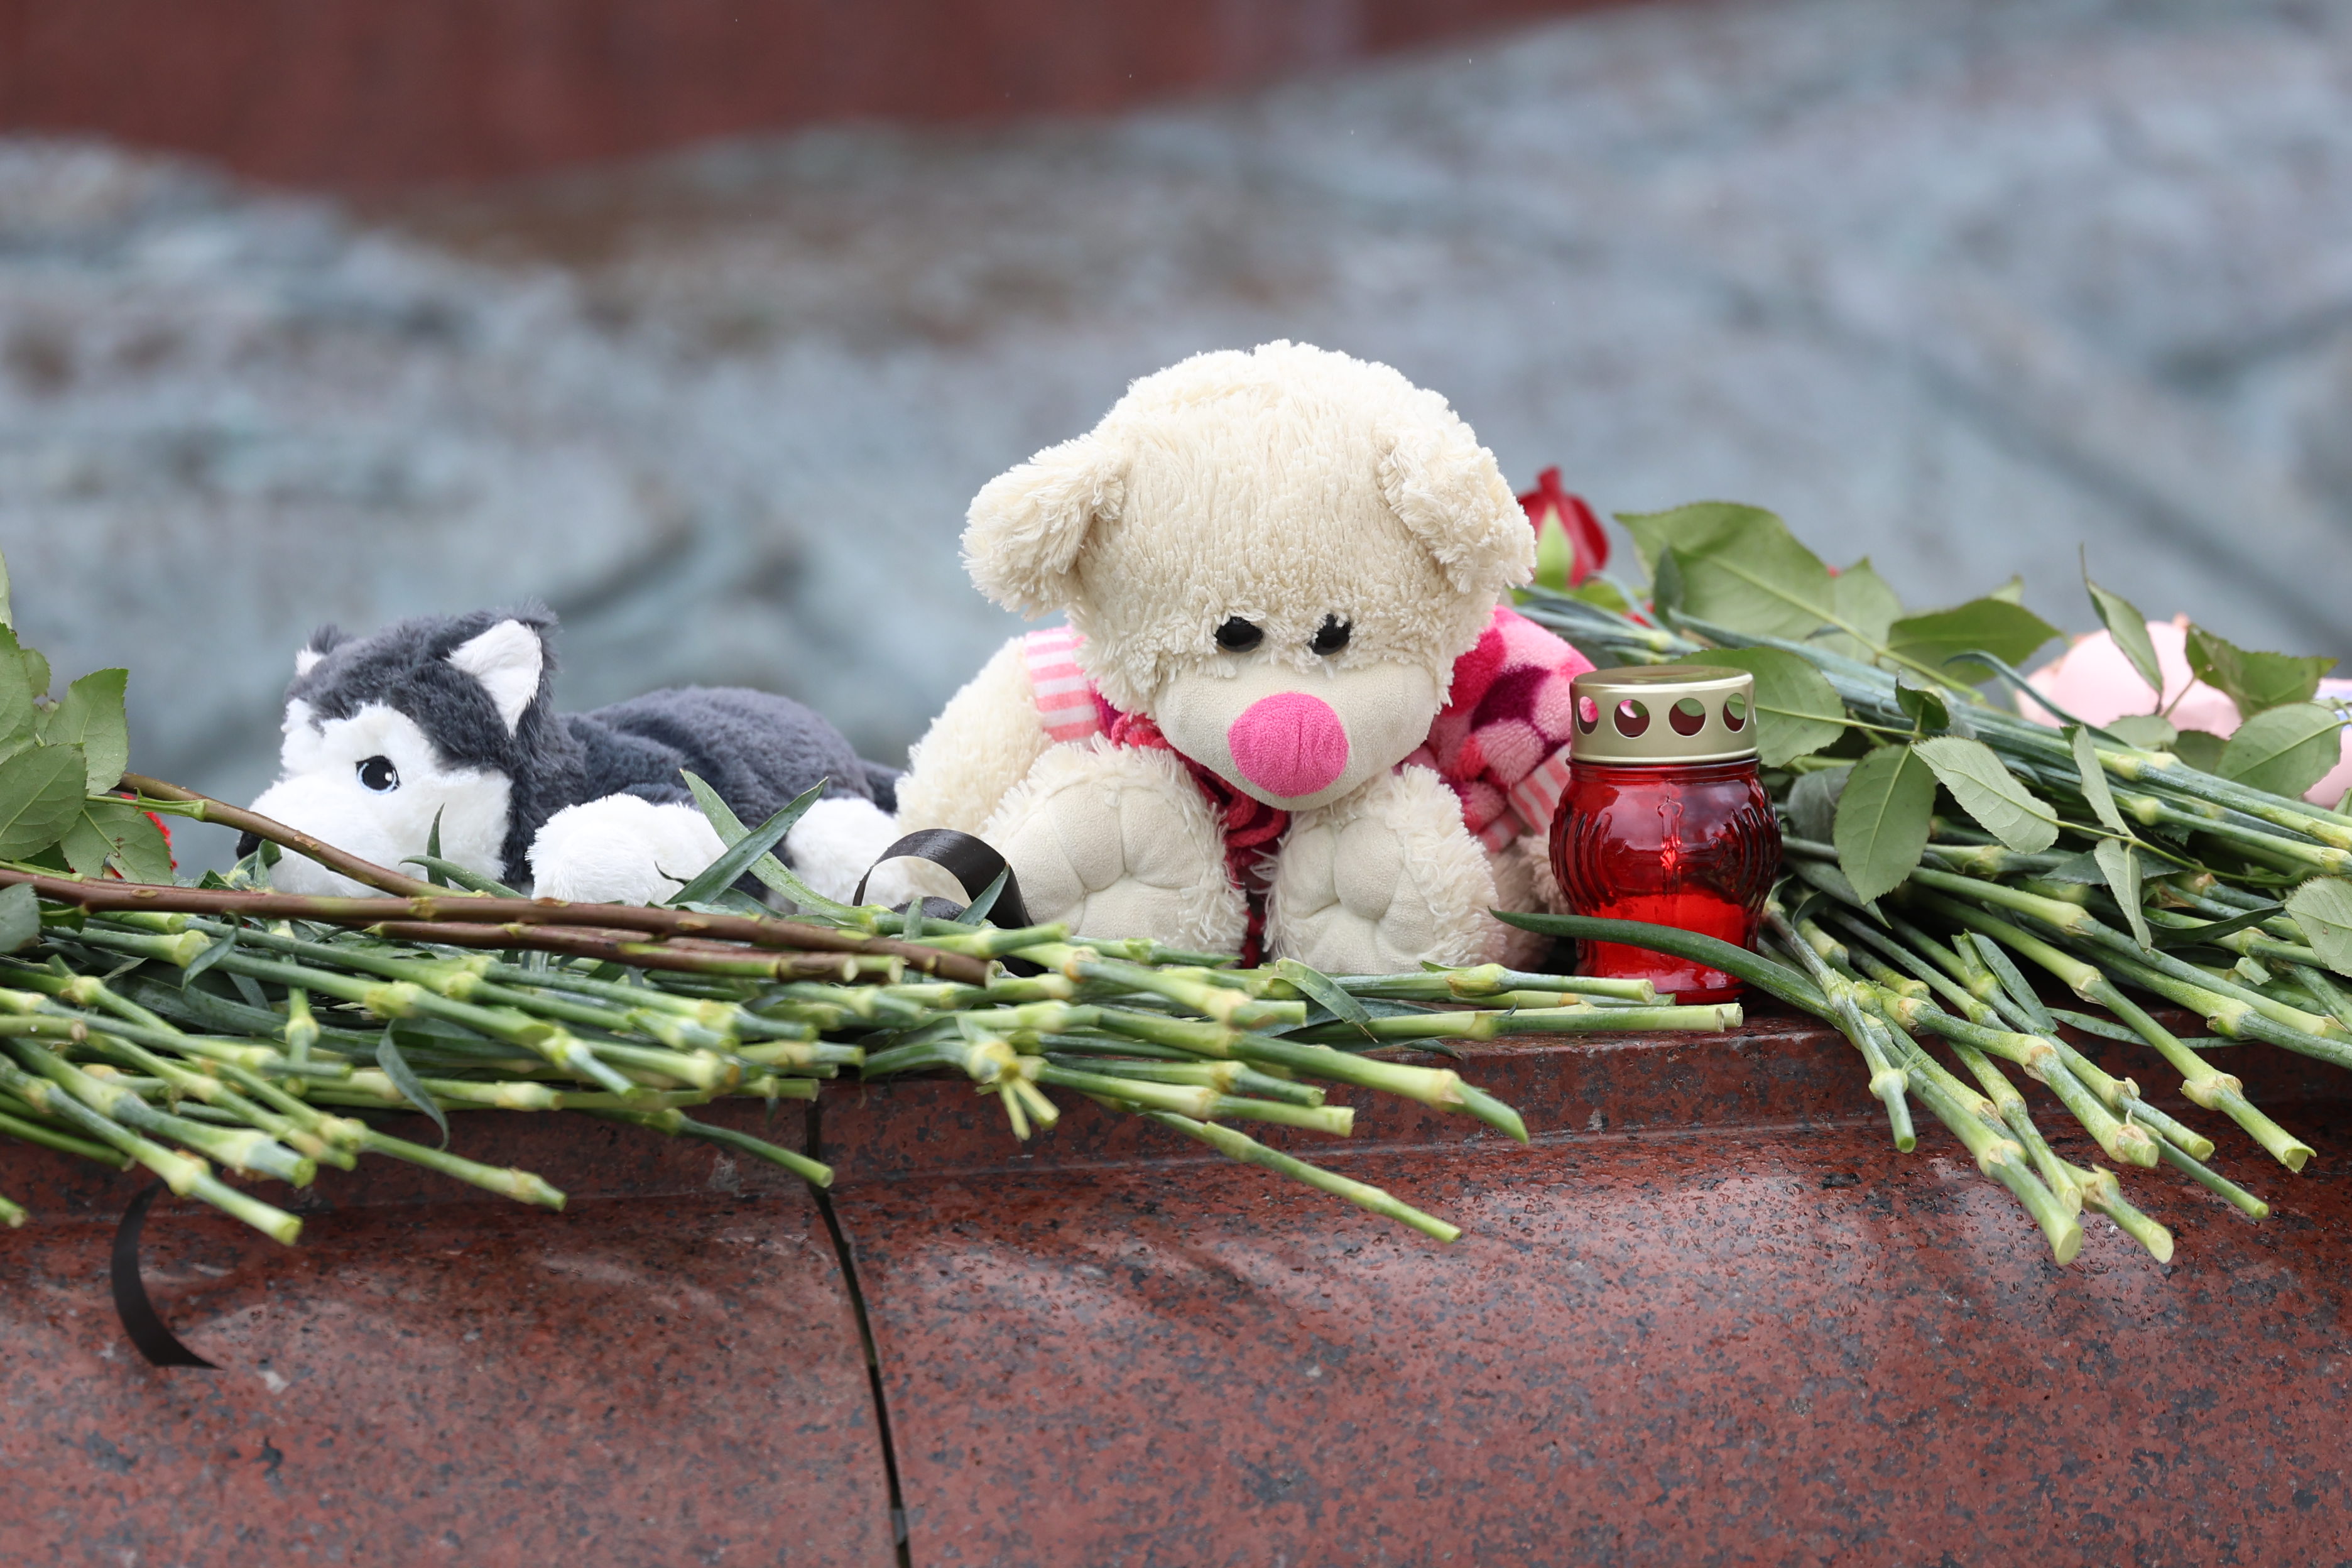 Жители Калининграда несут цветы на площадь Победы в память о жертвах теракта (фото)